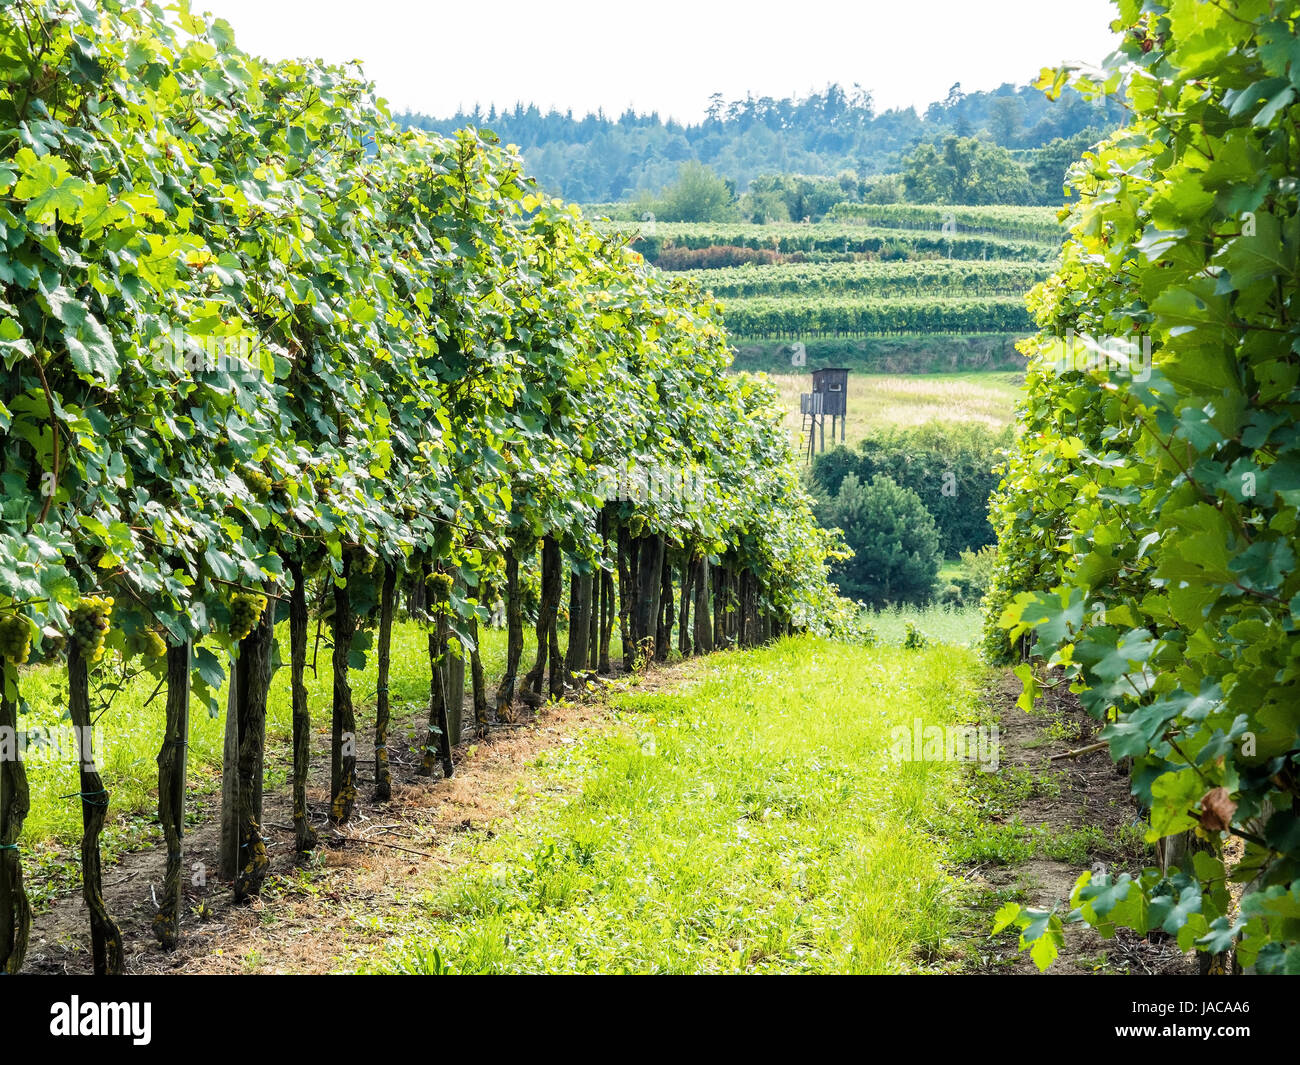 Le vignoble d'un vigneron en Basse-Autriche, der im Weingarten dans Winzers Niederösterreich Banque D'Images